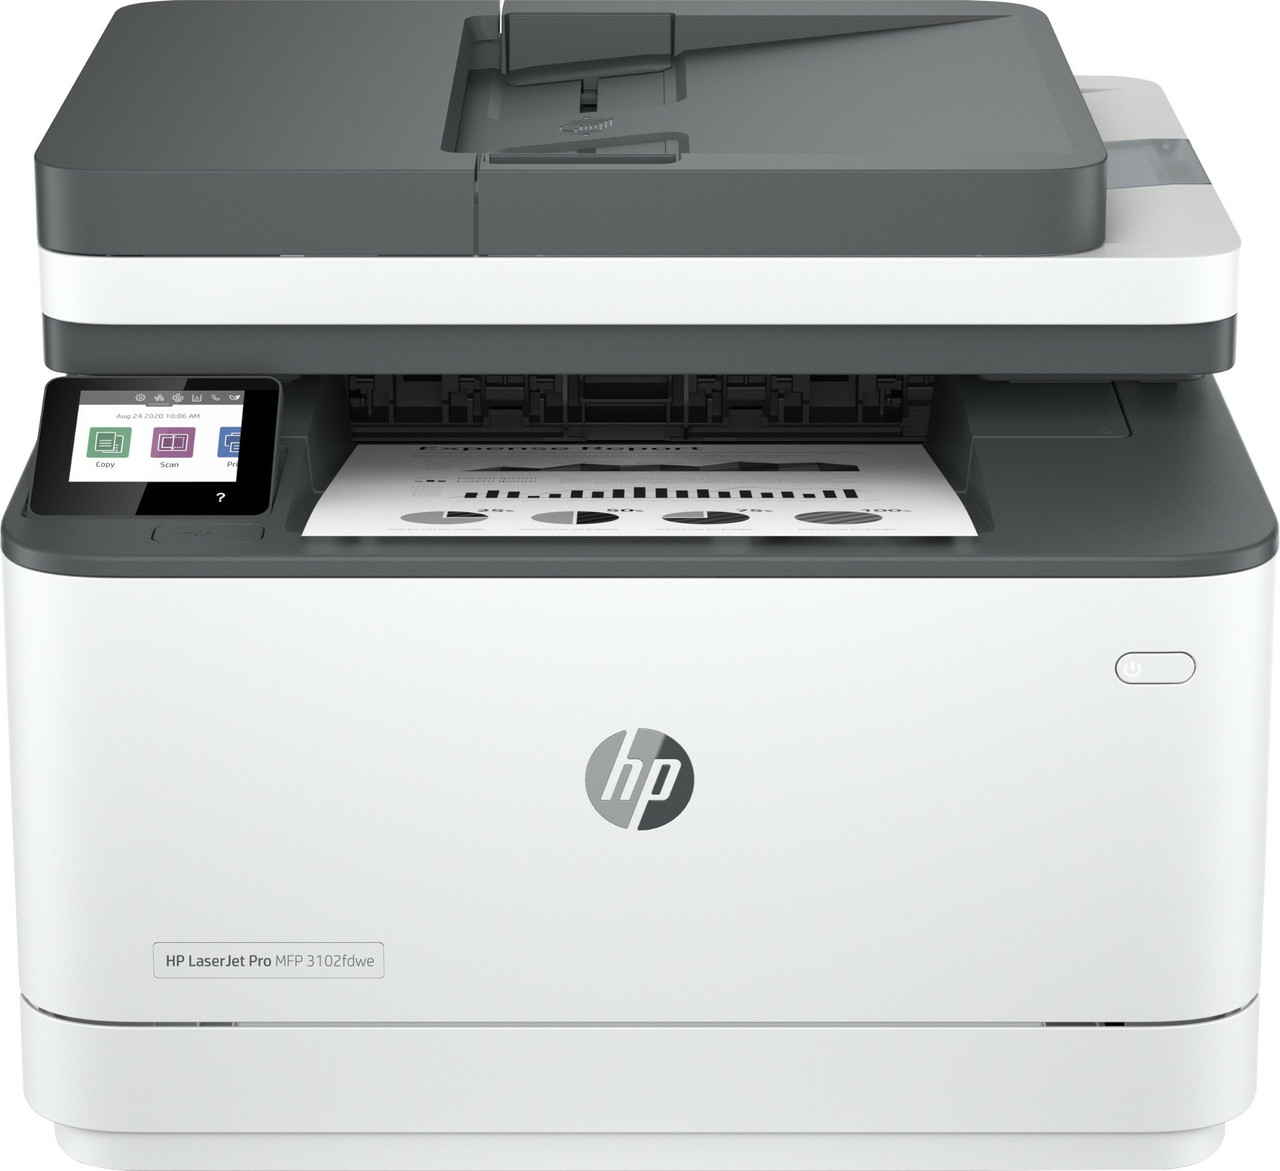 HP LaserJet Pro MFP3102fdwe